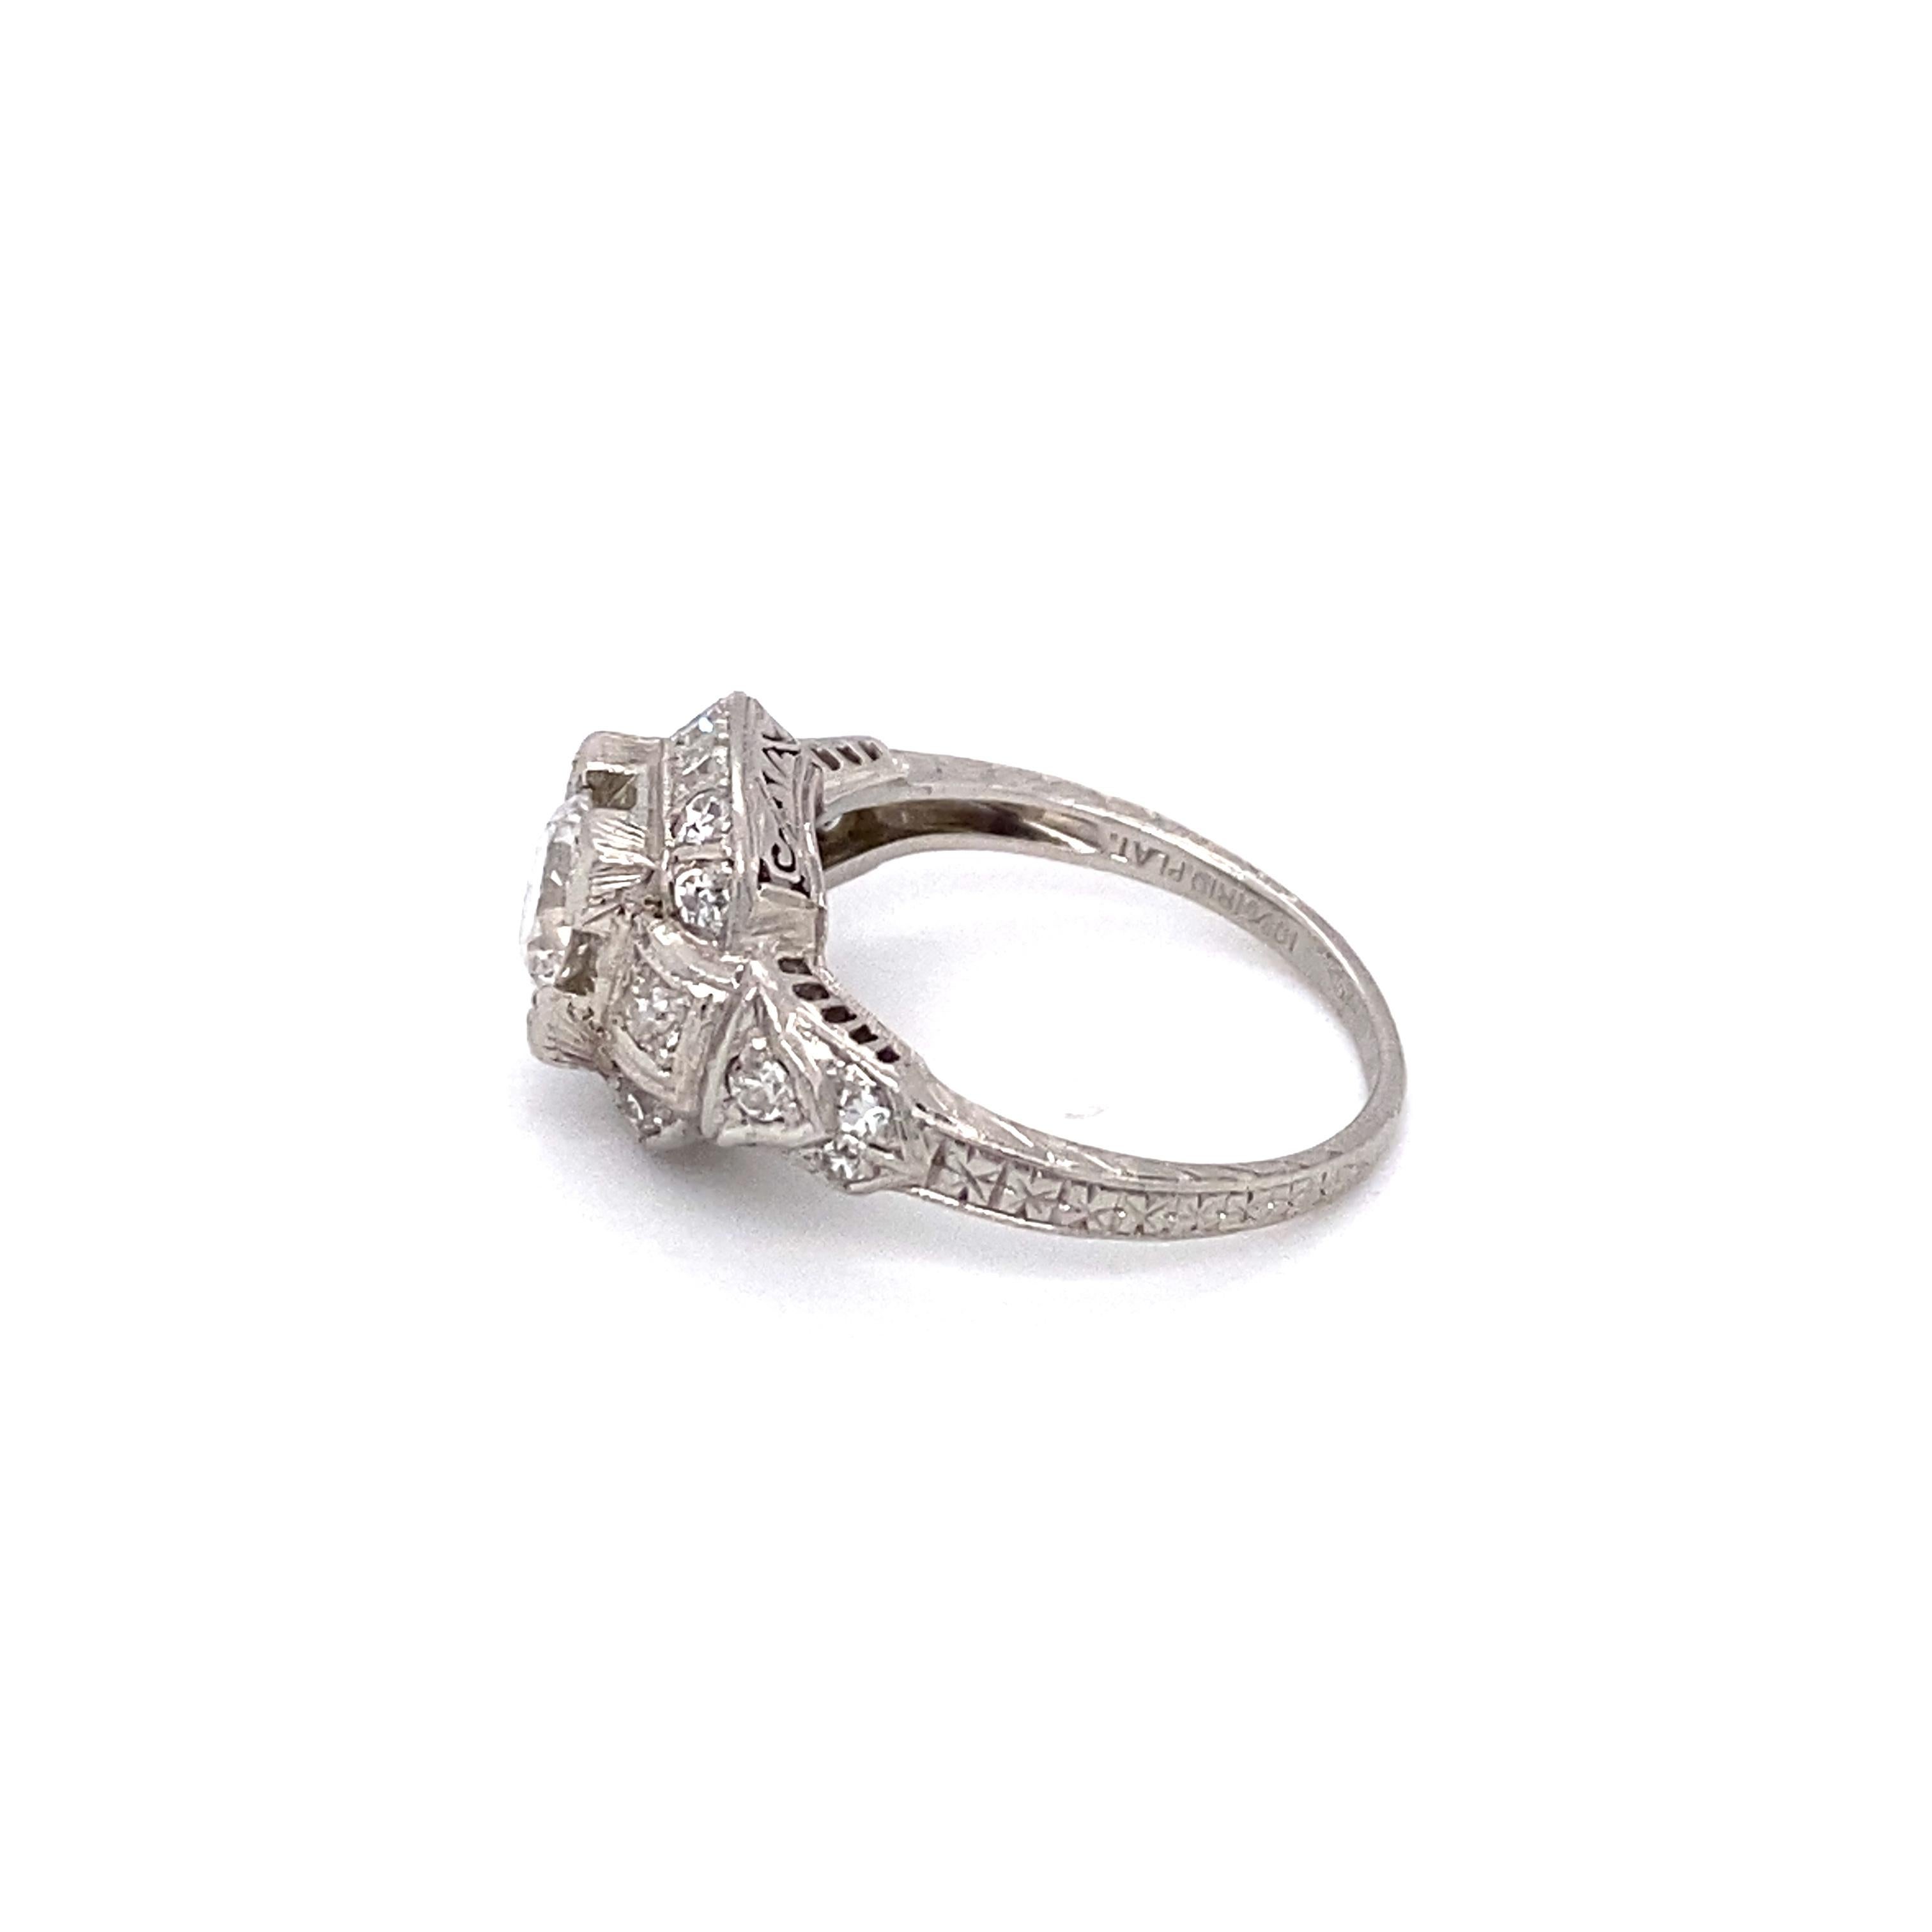 Art Deco 1920s 0.60 Carat Old European Cut Diamond Engagement Ring in Platinum